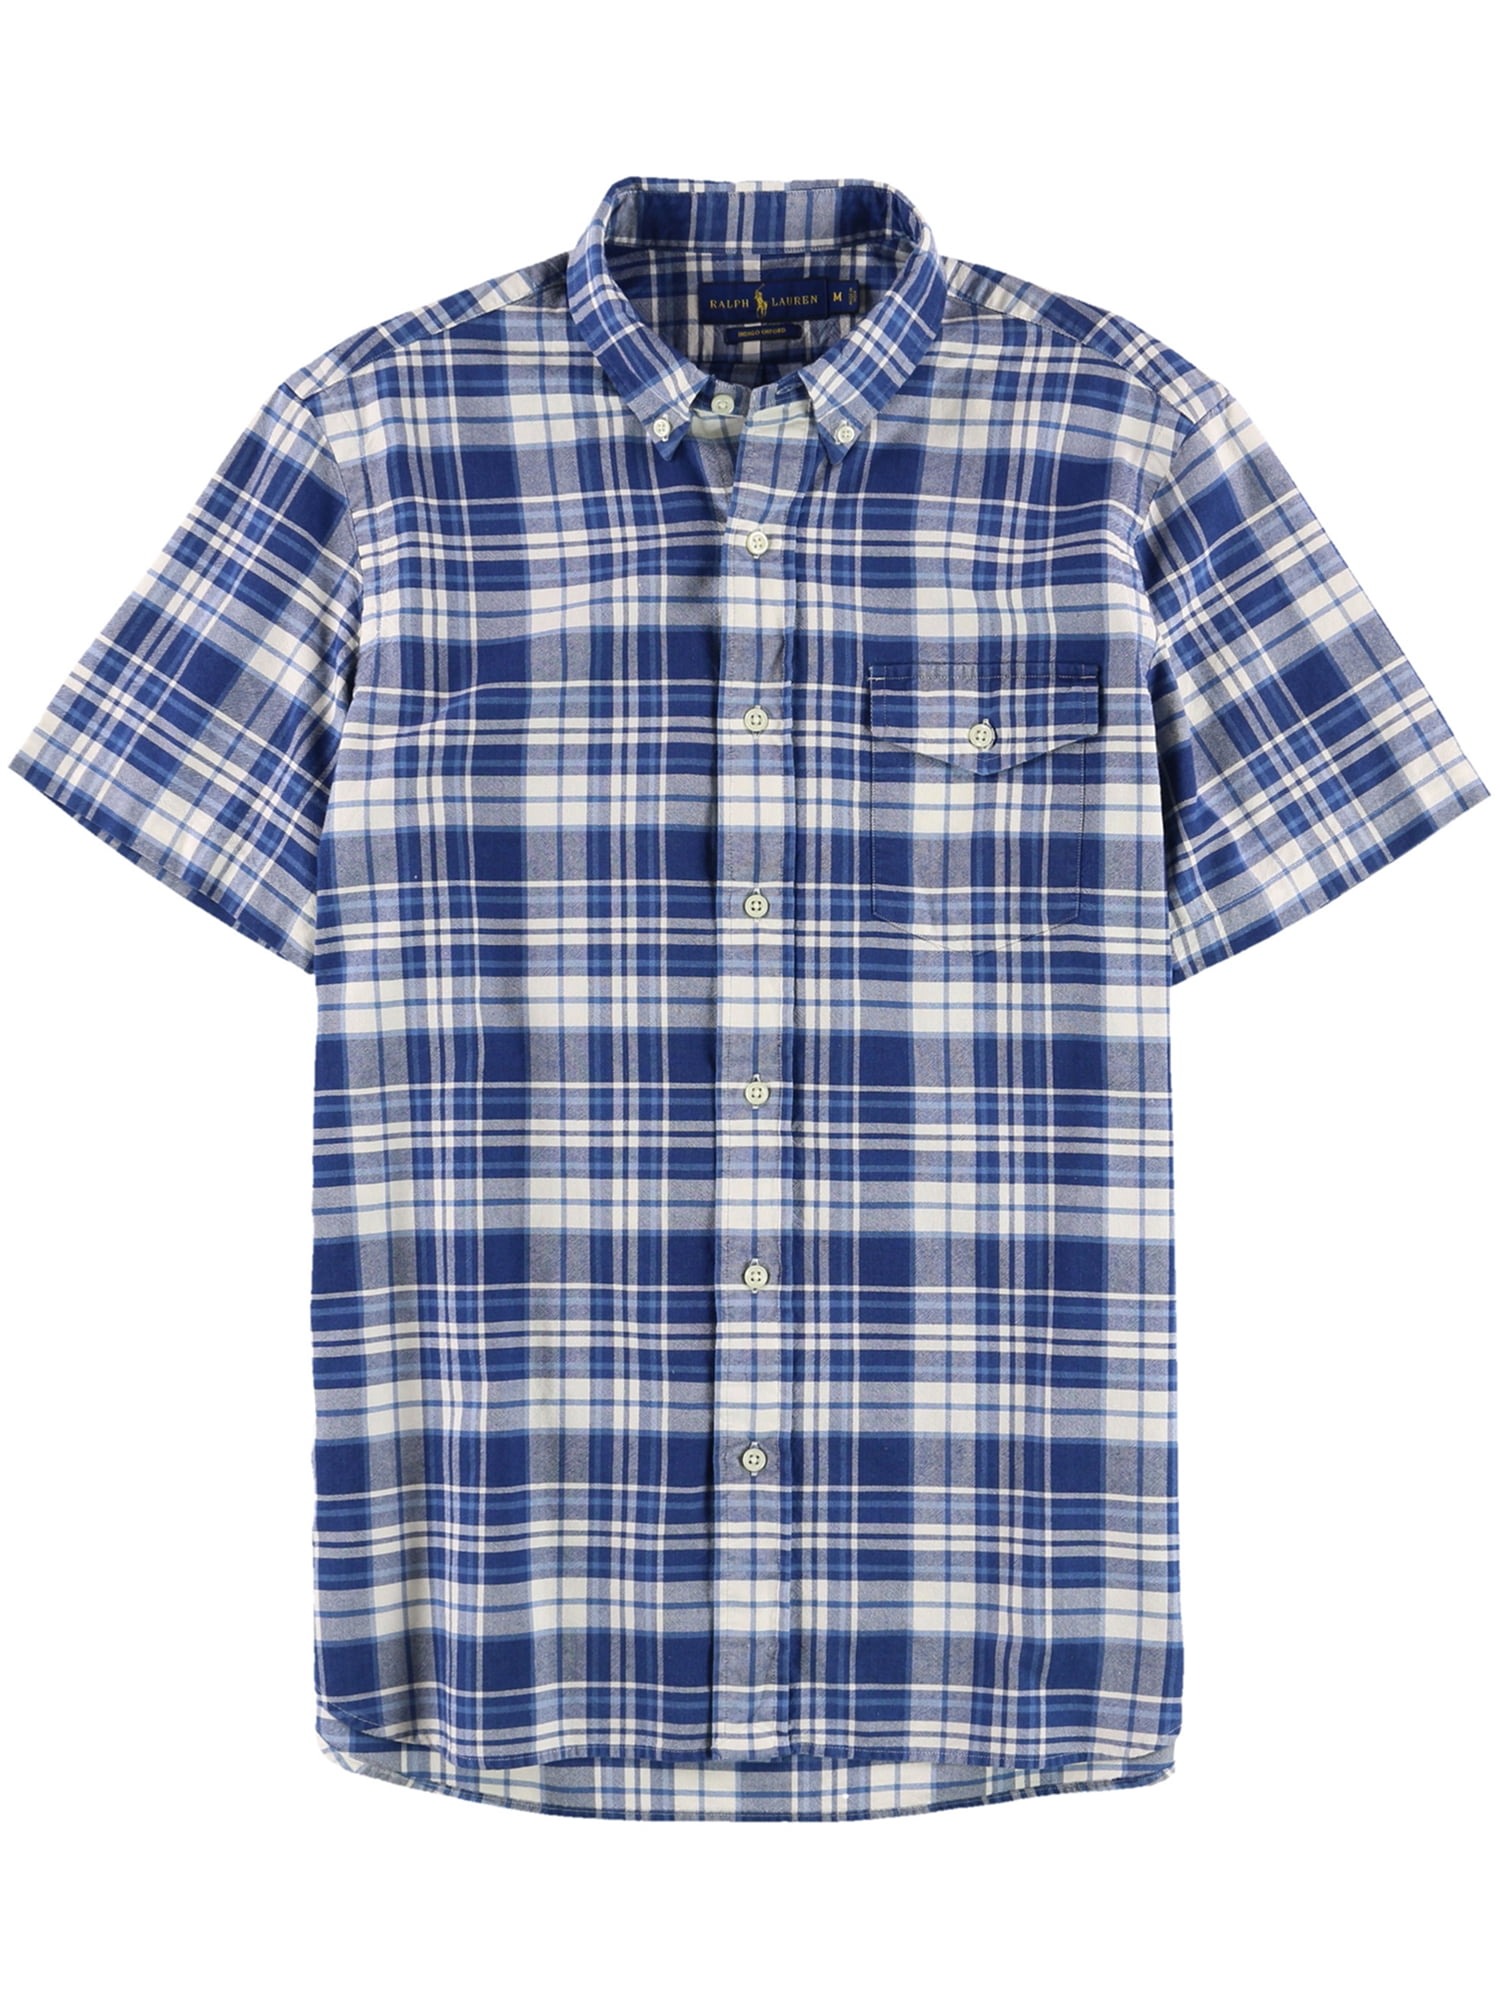 Ralph Lauren Mens Standard Plaid Button Up Shirt, Blue, Medium ...